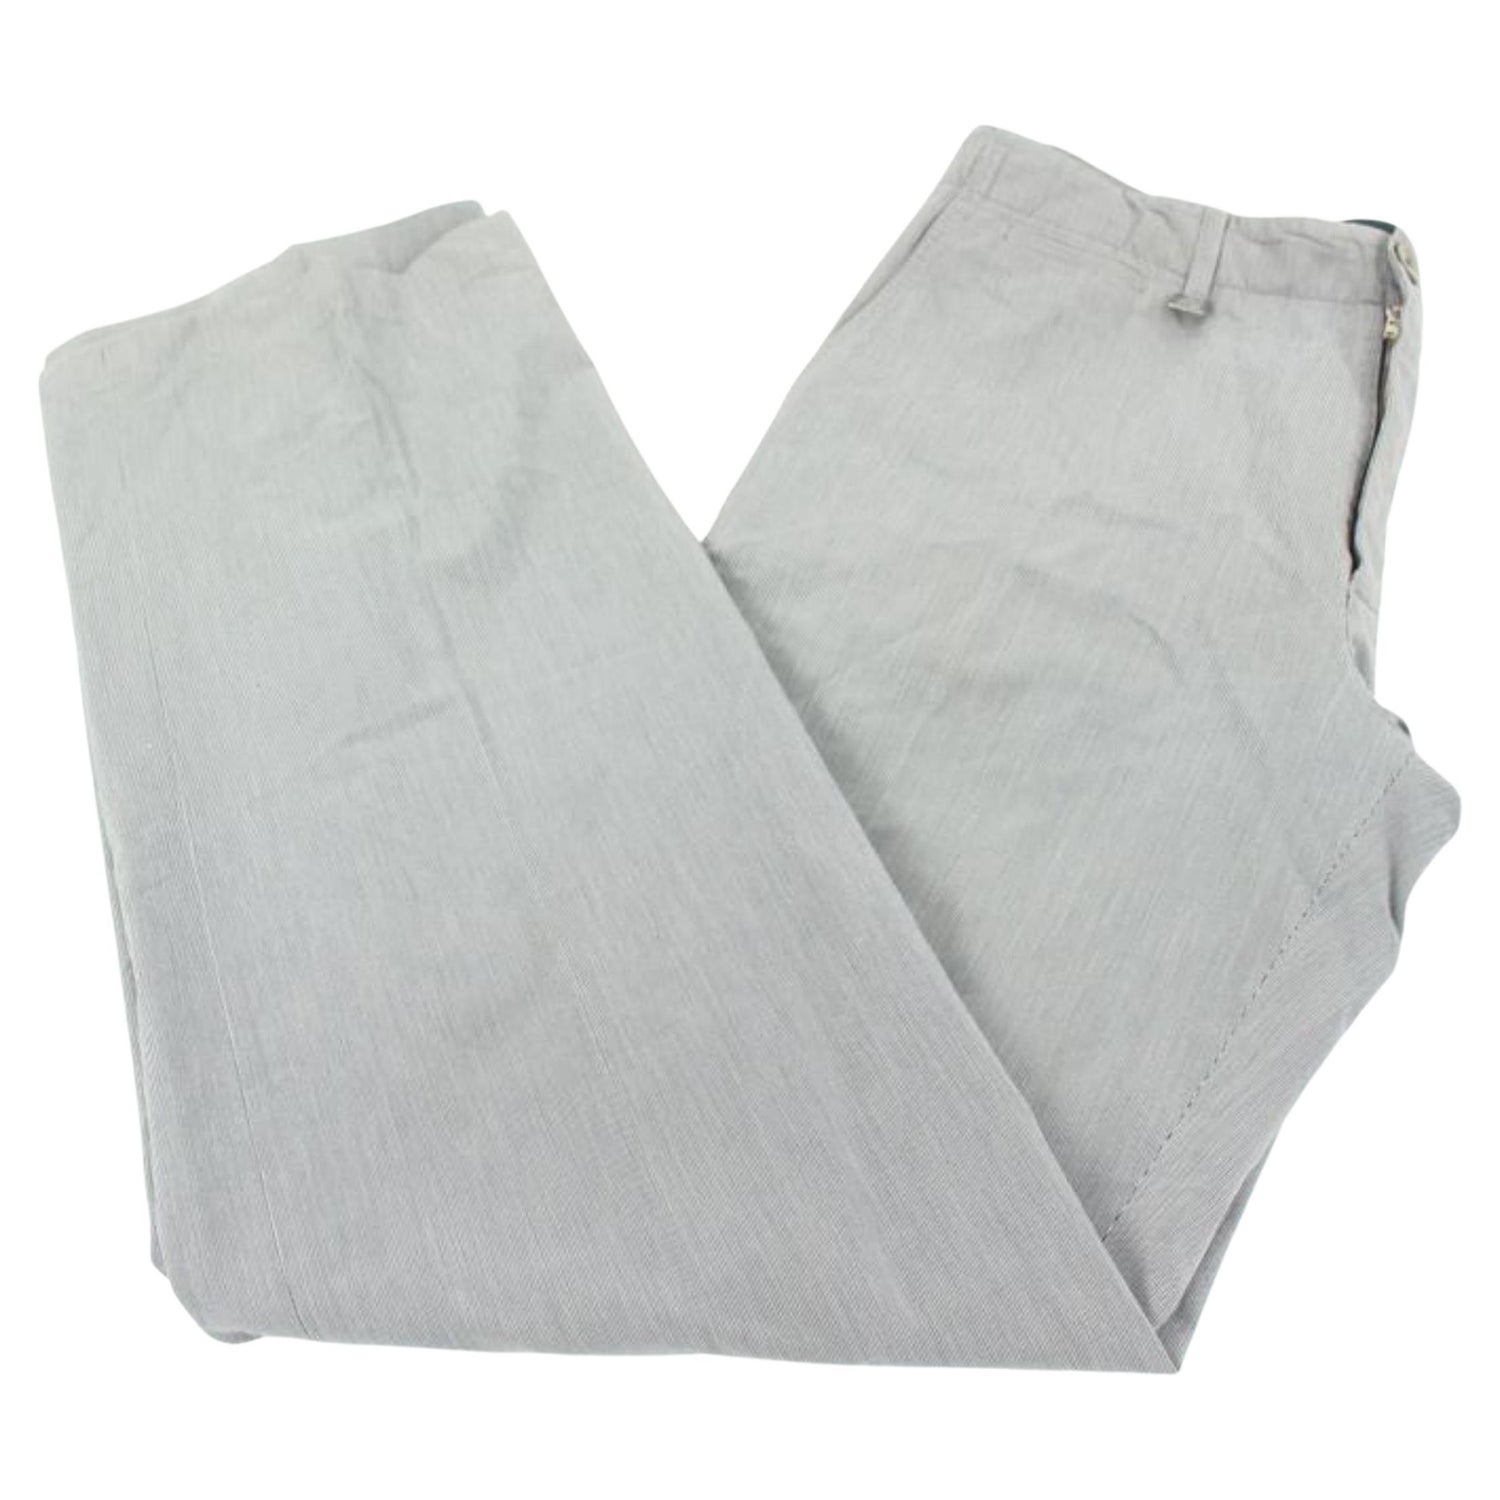 Louis Vuitton Women's US 10 Brown Monogram Denim Jeans Pants 120lv21